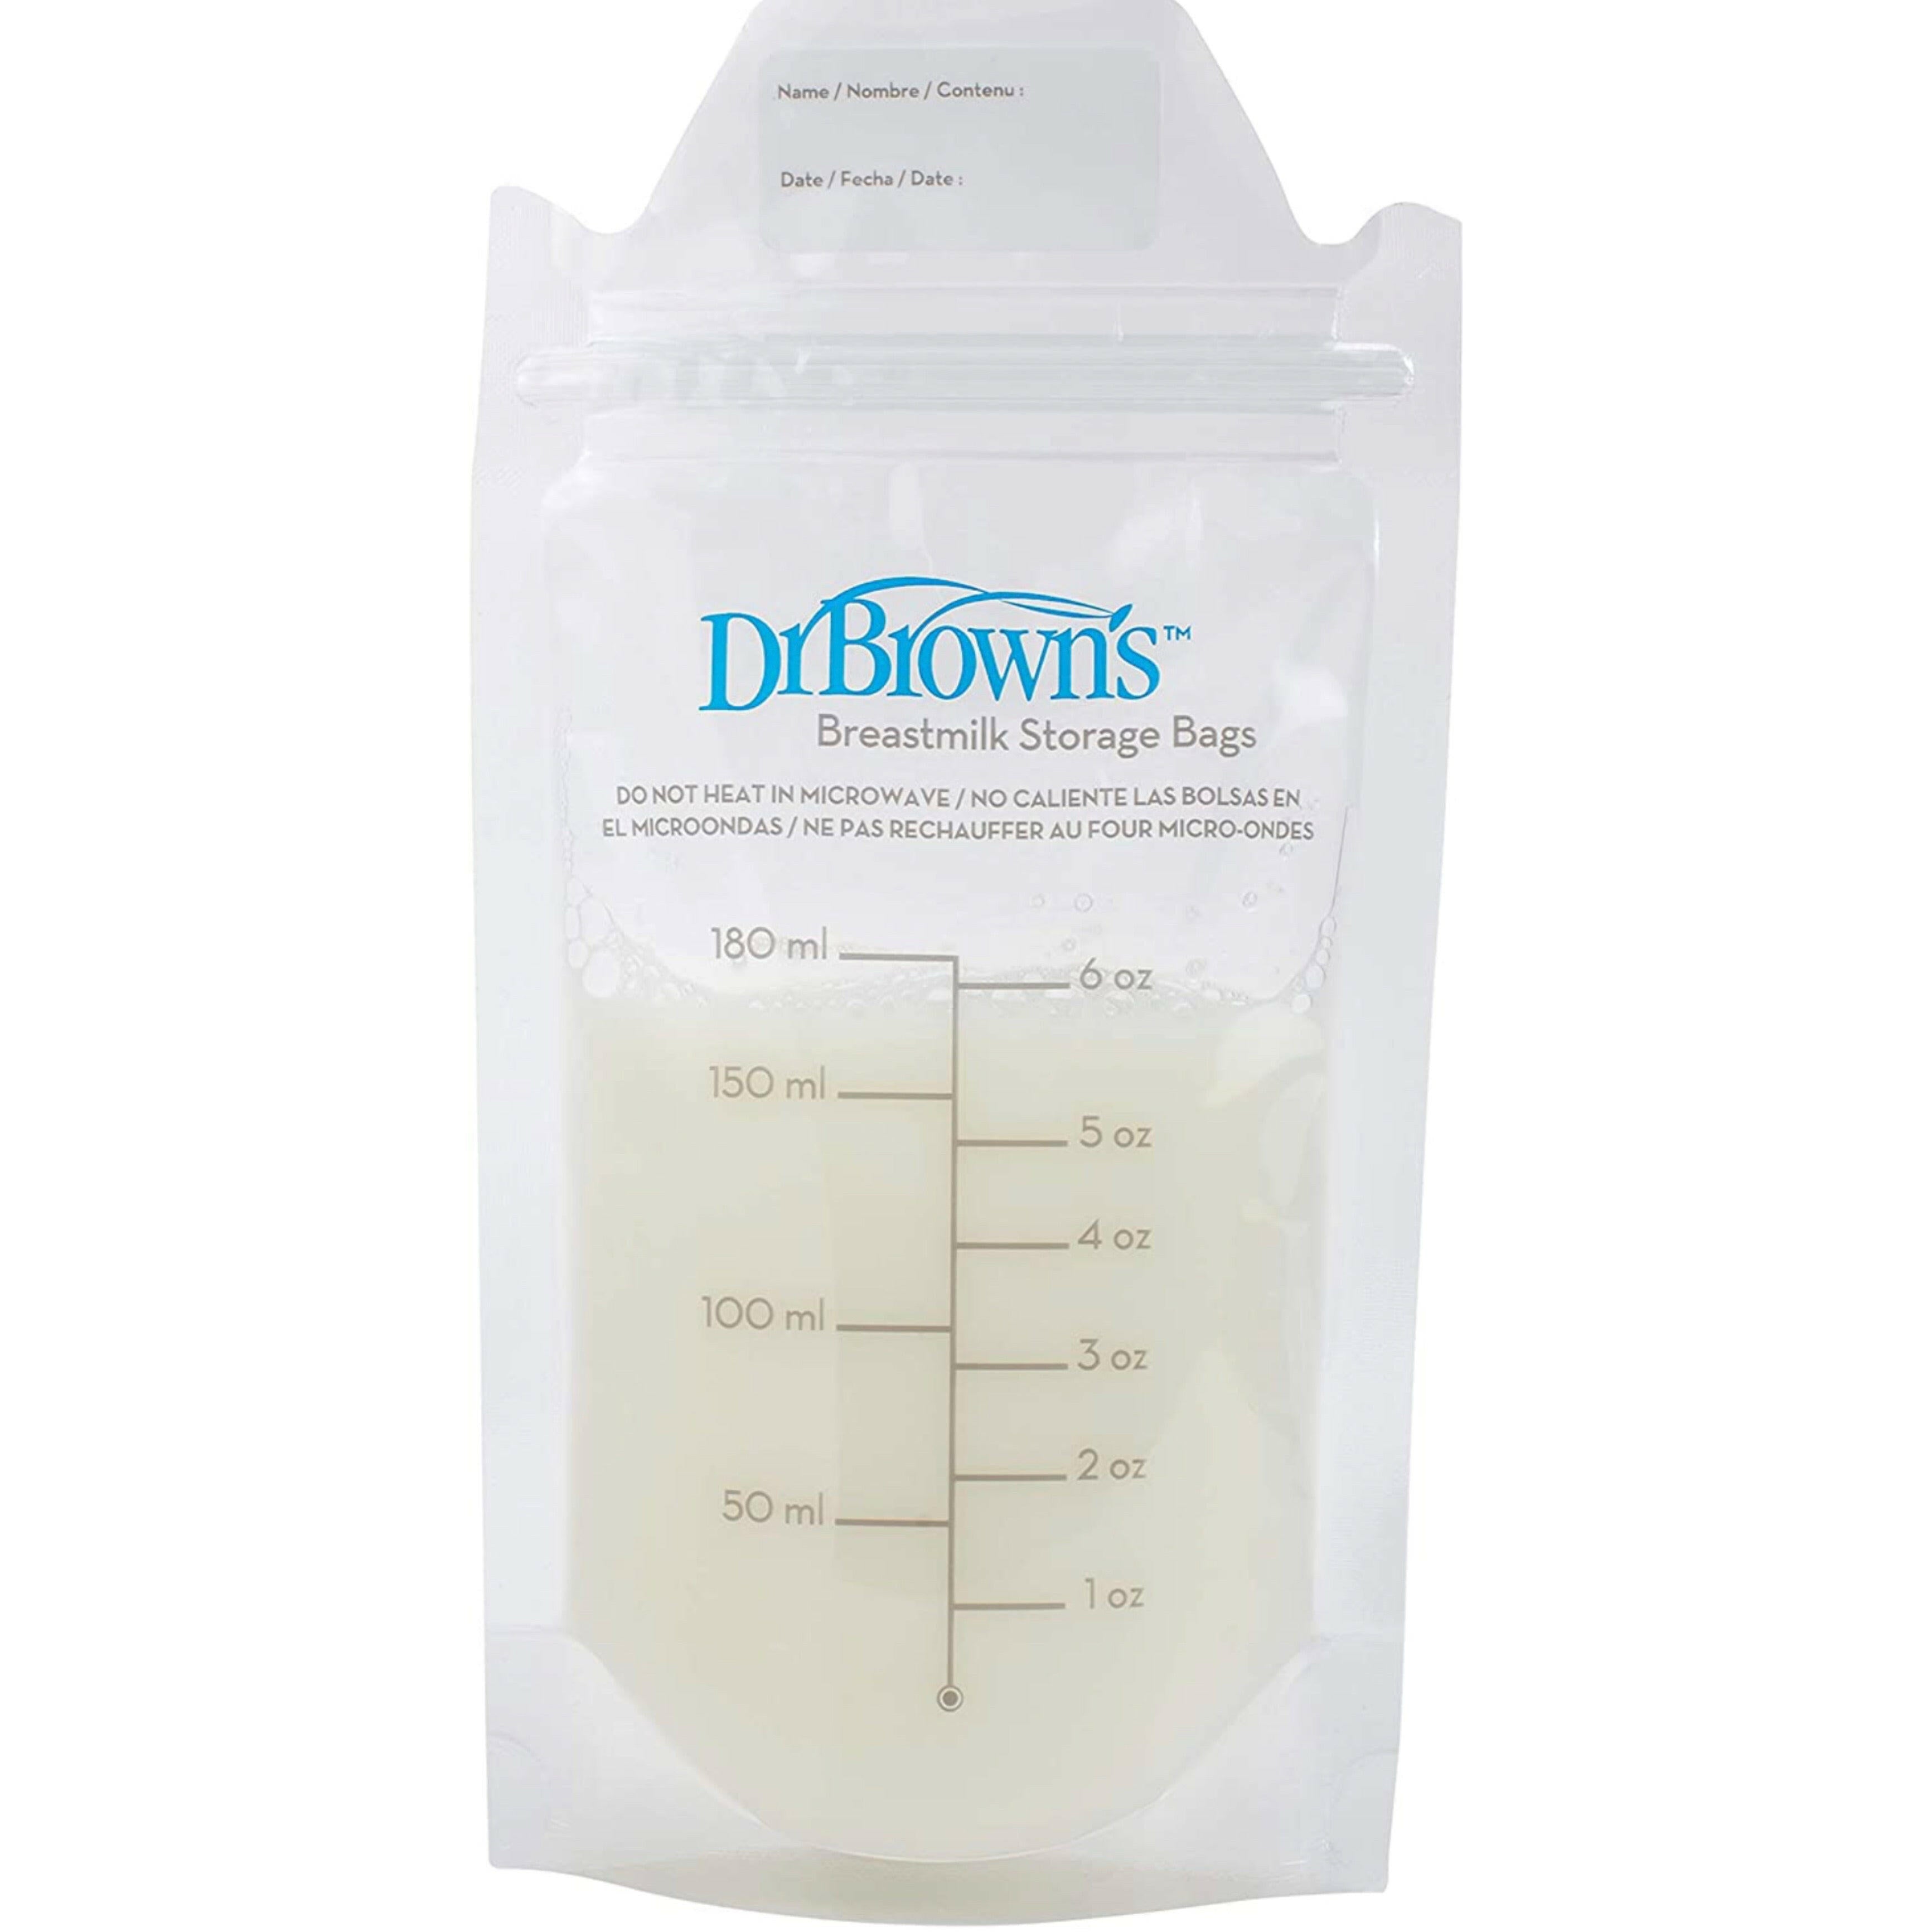 Breastmilk storage bag,25pcs, by Dr brown's.